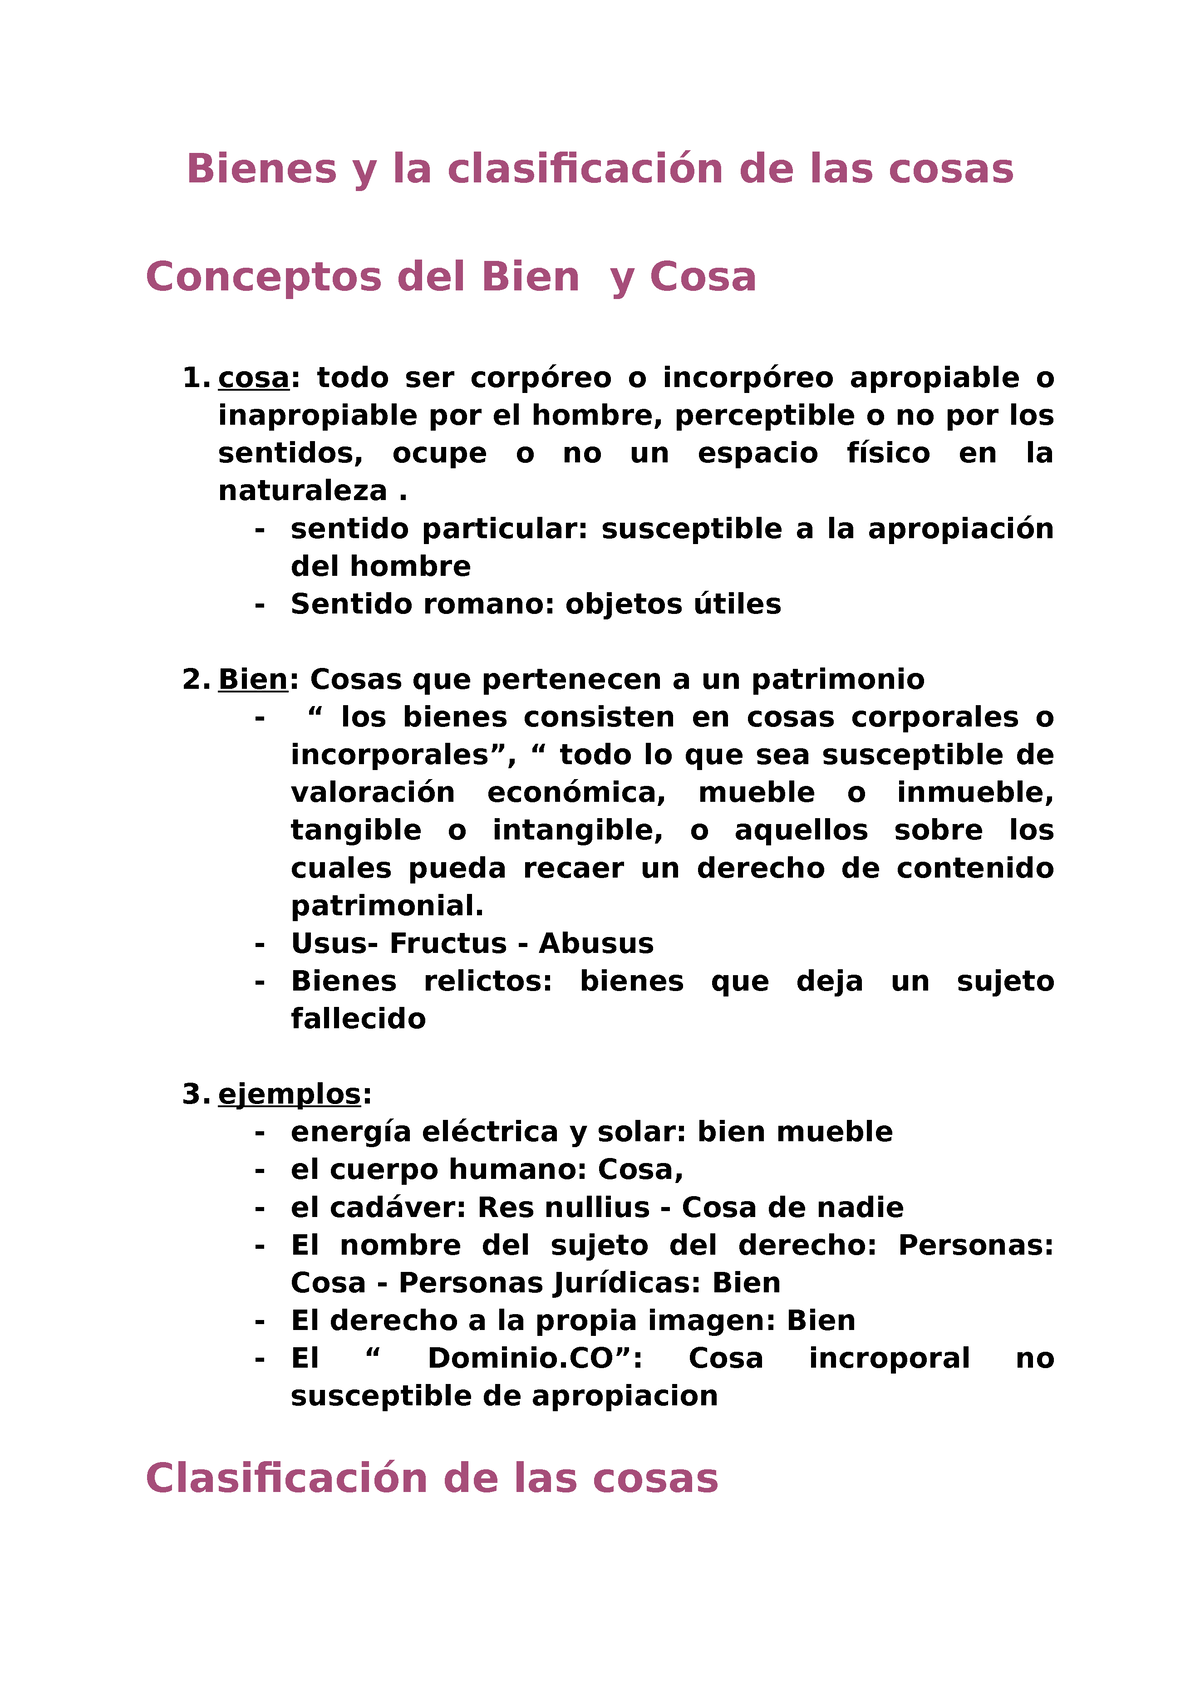 Bienes Y Cosas Clasificación Bienes Y La Clasificación De Las Cosas Conceptos Del Bien Y Cosa 9764